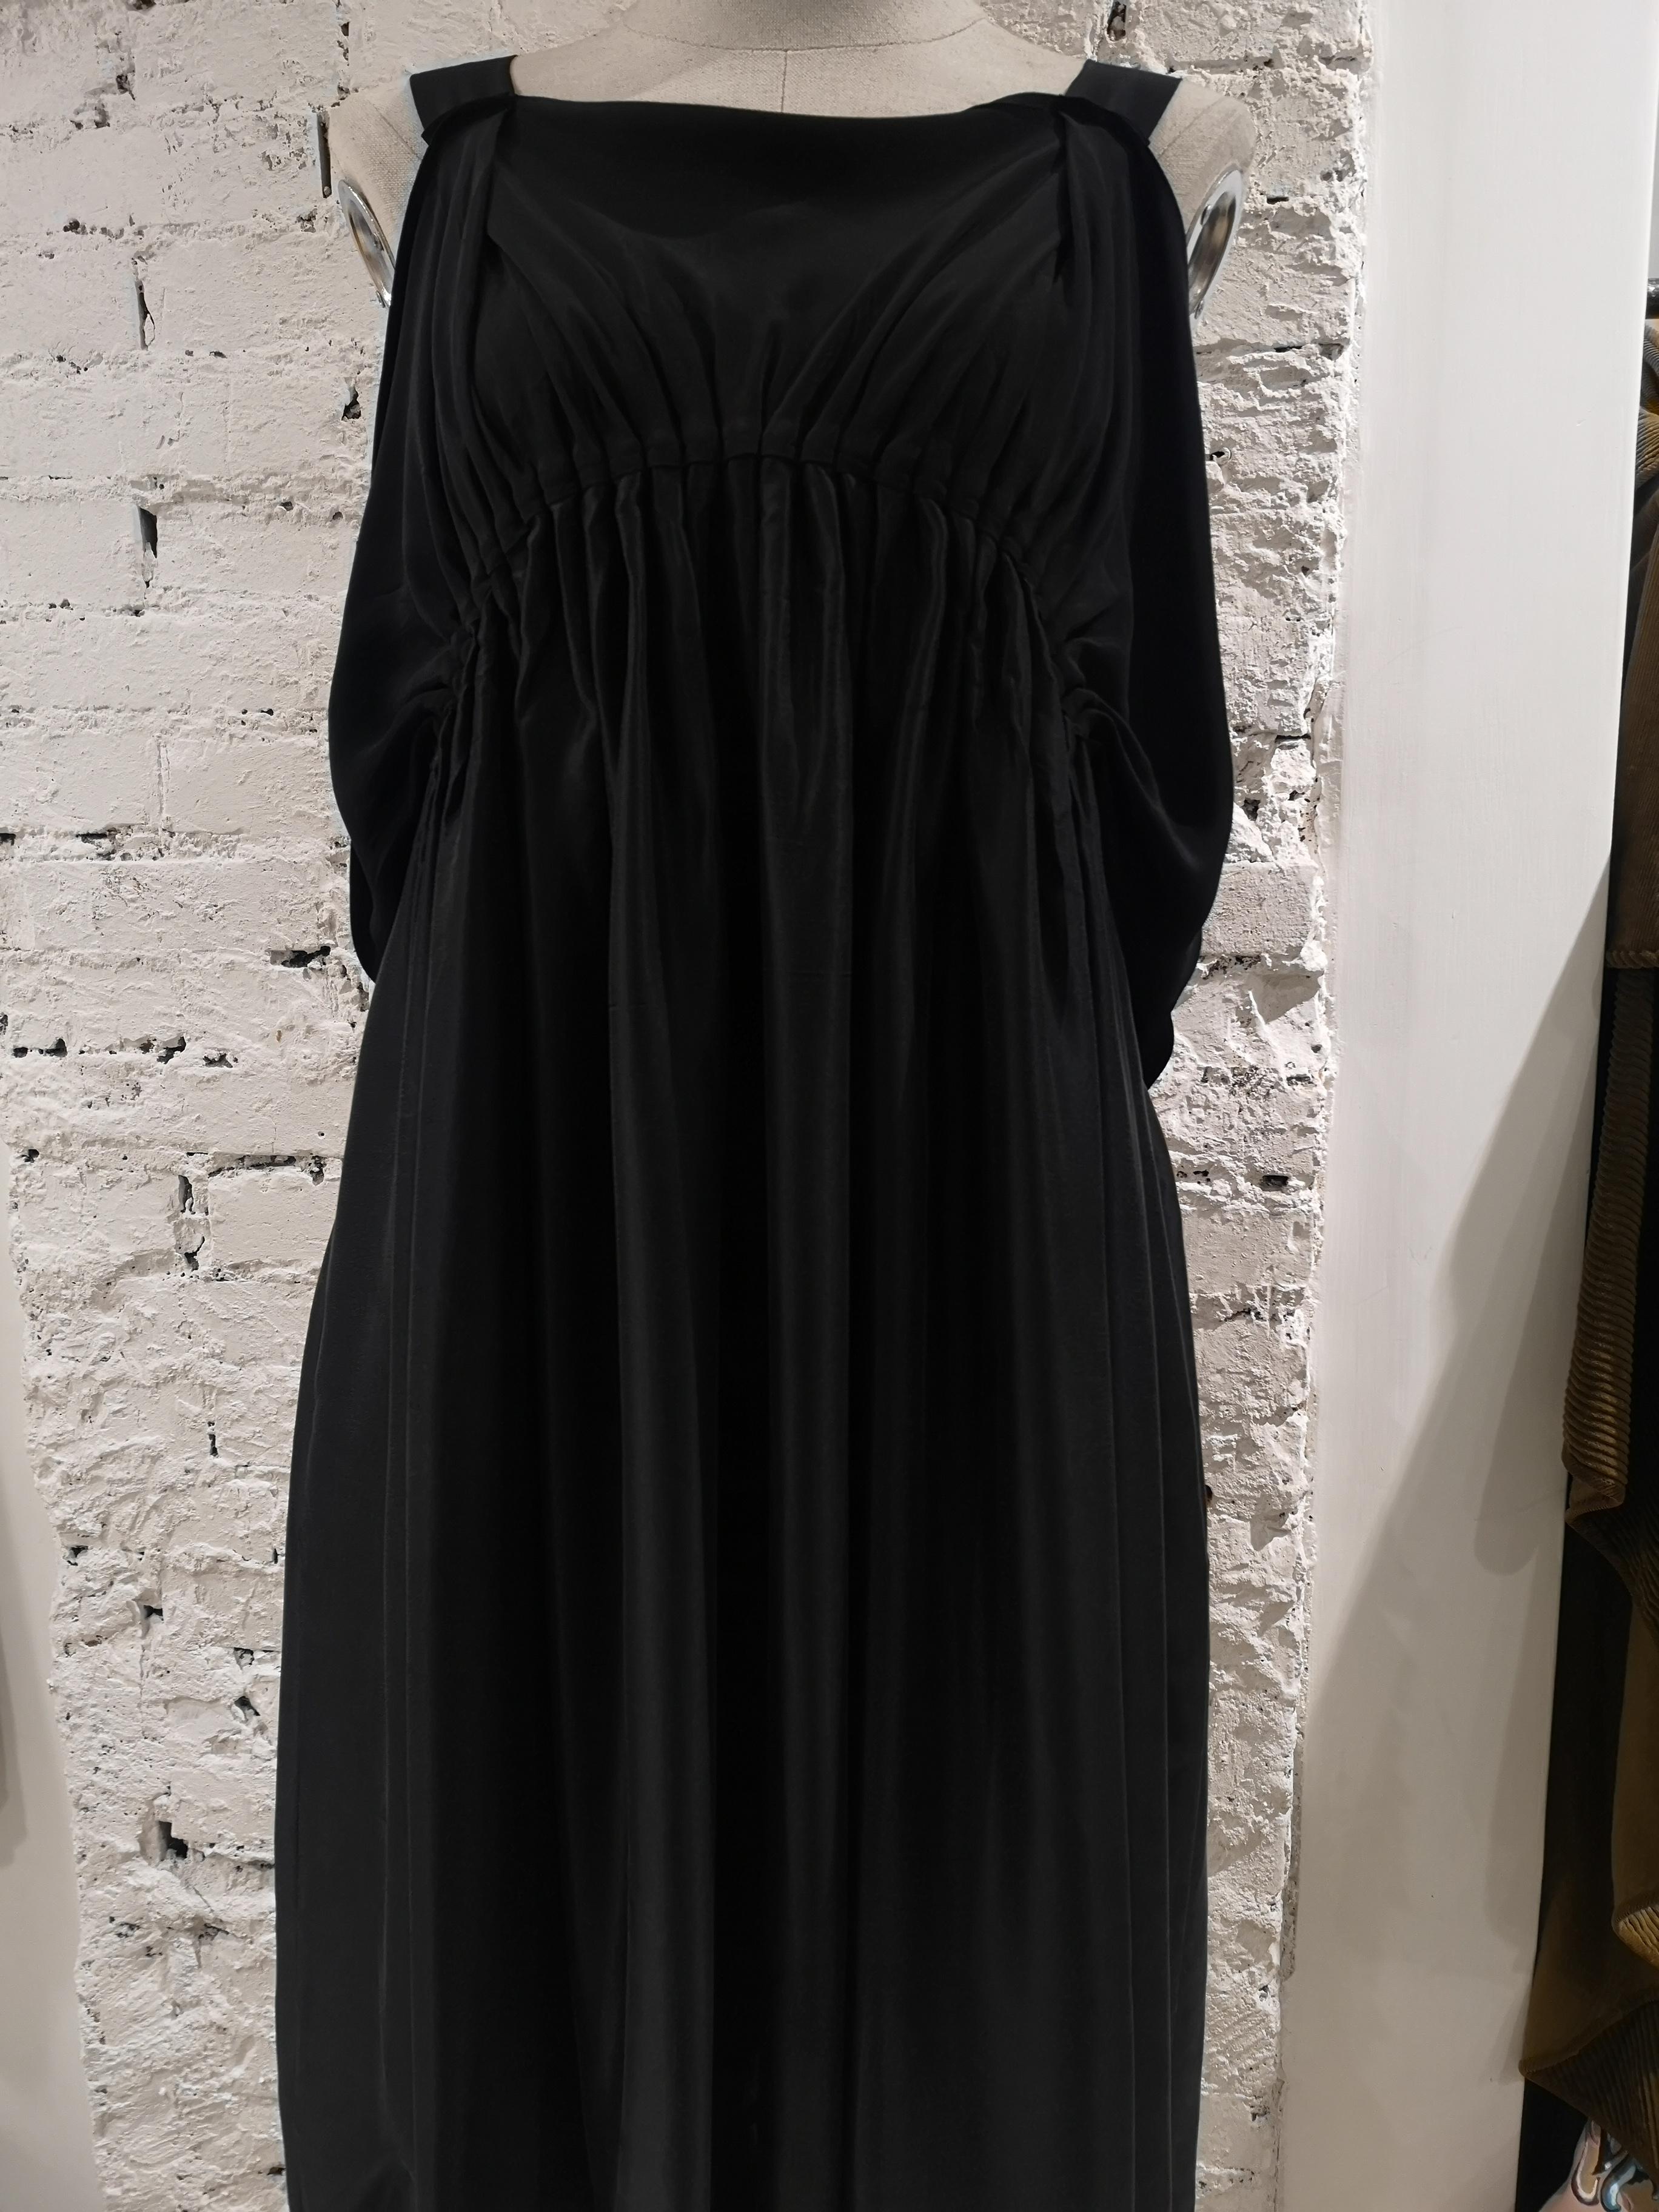 Black Vintage black dress